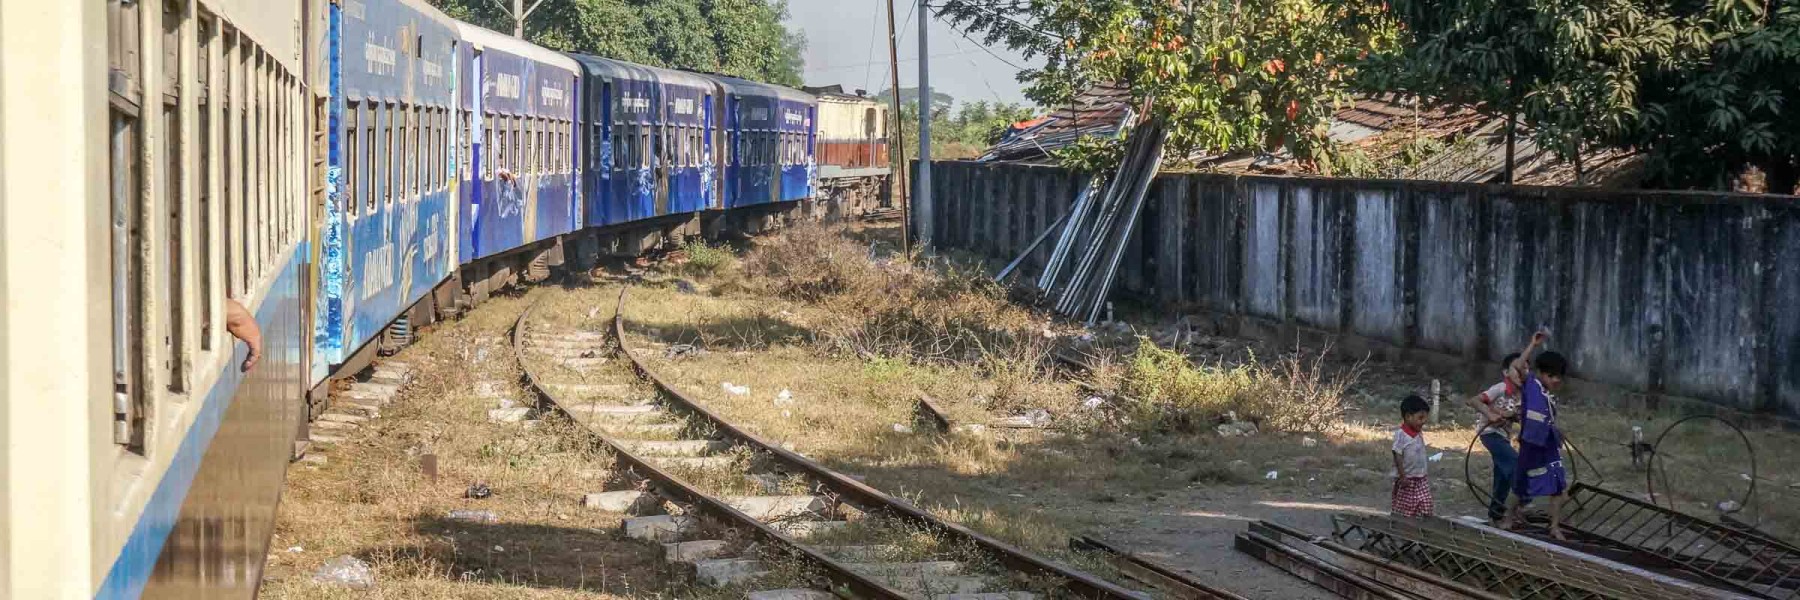 A train in Myanmar